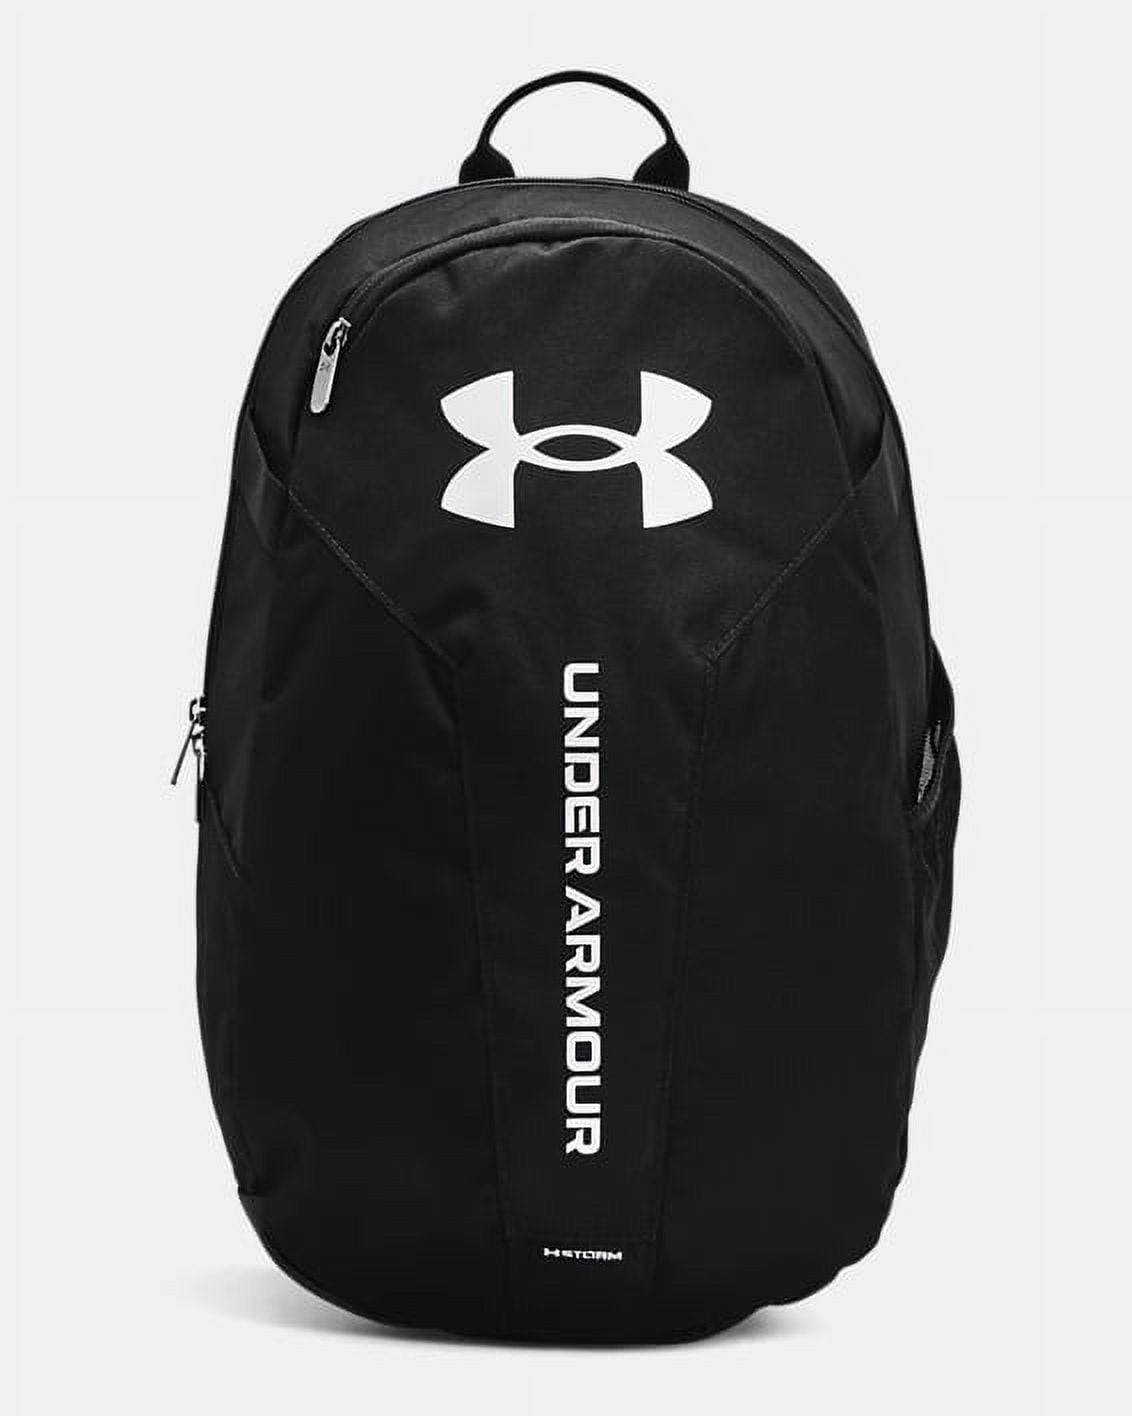 Under Armour Hustle Lite Backpack - Black (002) - Walmart.com